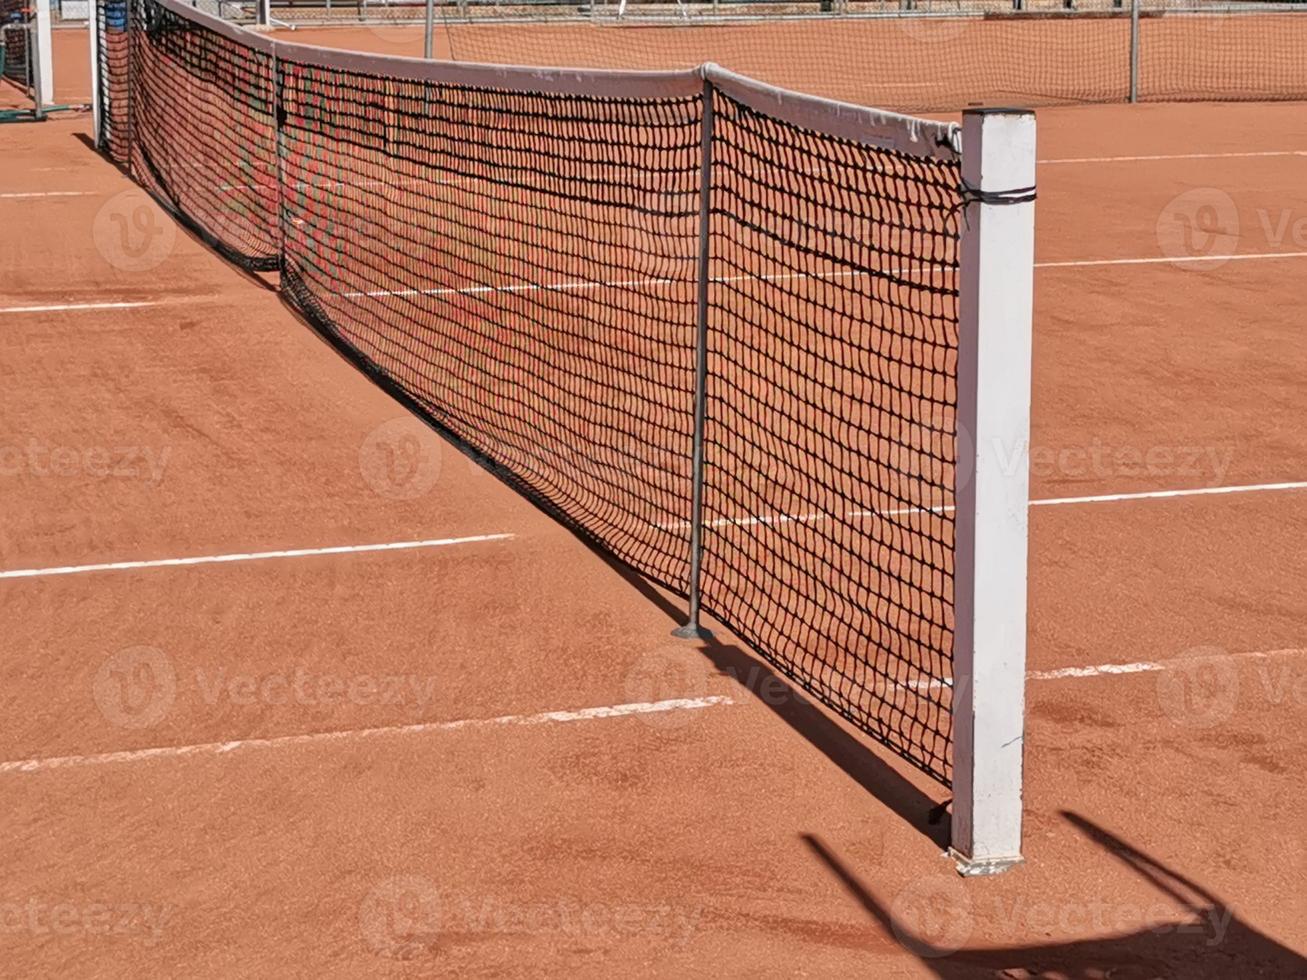 detalle de la red del campo de tenis foto